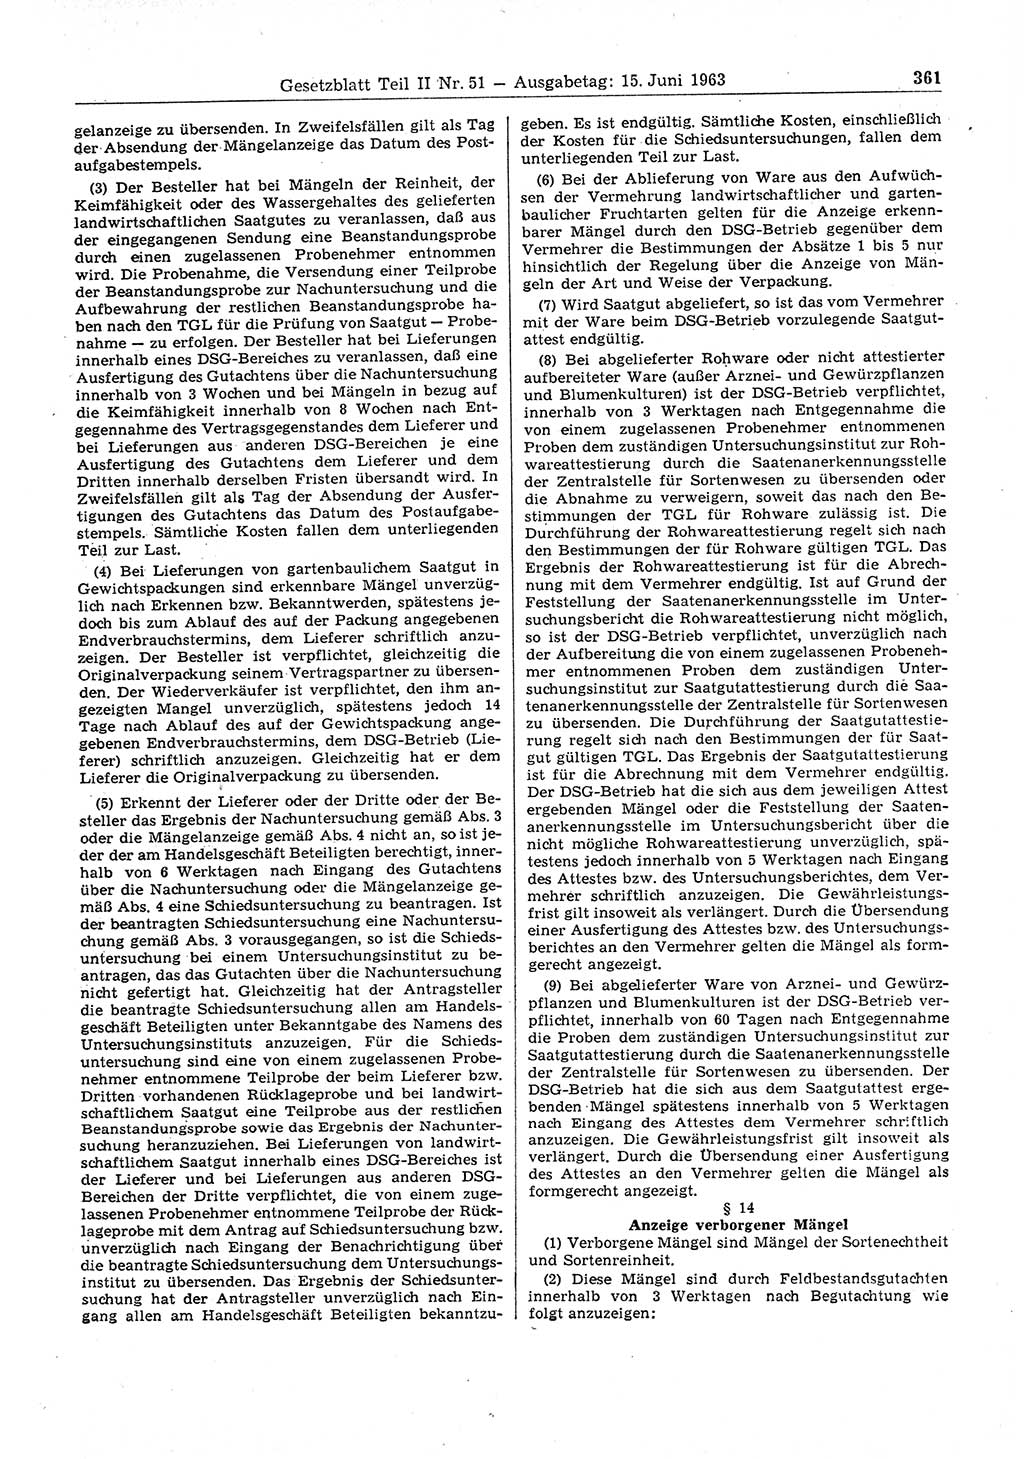 Gesetzblatt (GBl.) der Deutschen Demokratischen Republik (DDR) Teil ⅠⅠ 1963, Seite 361 (GBl. DDR ⅠⅠ 1963, S. 361)